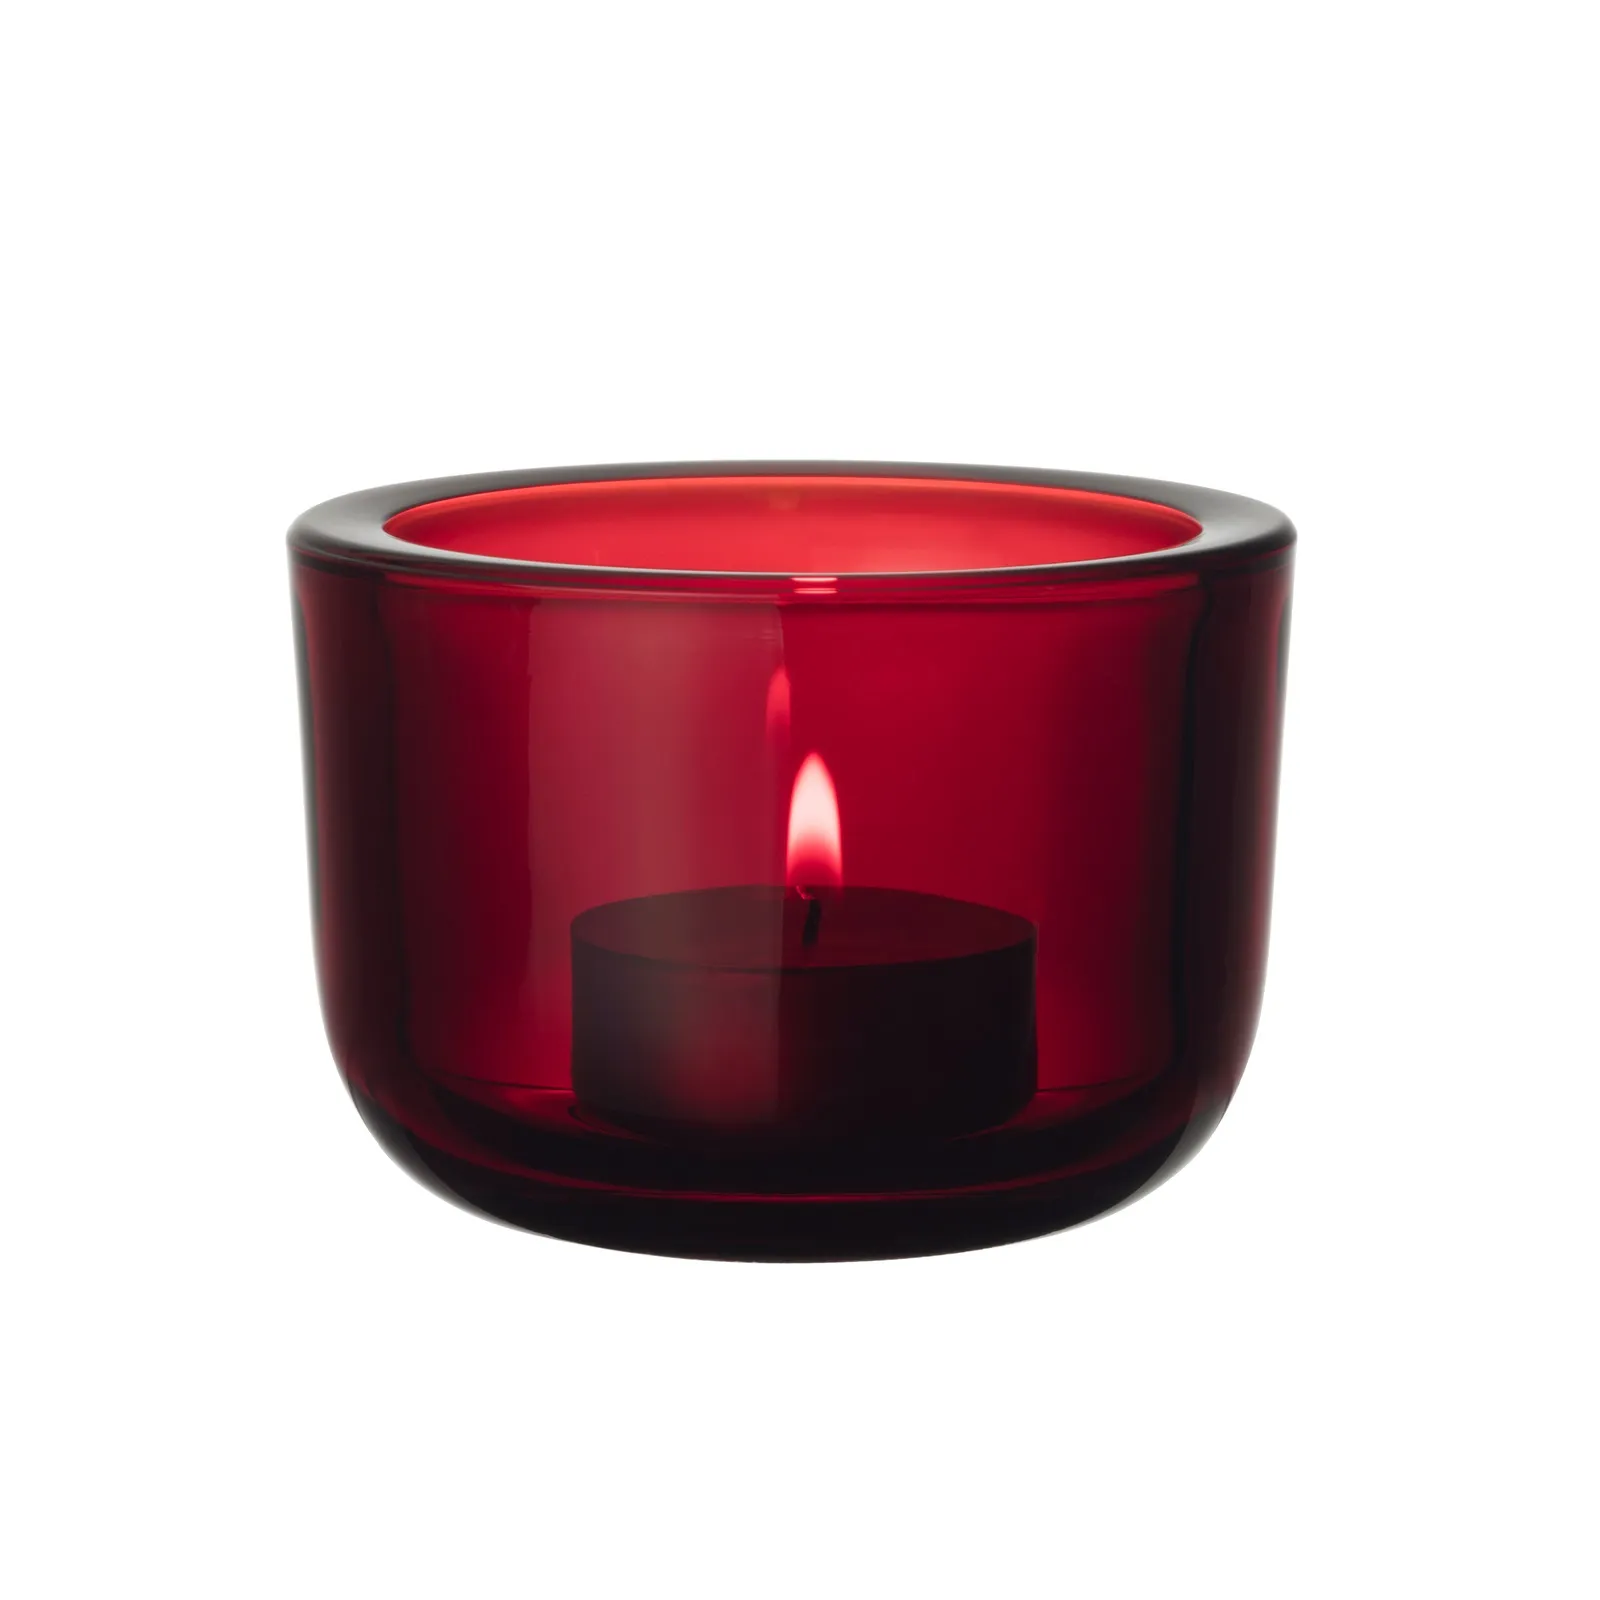 Portacandele Iittala Valkea tealight 60mm mirtillo rosso